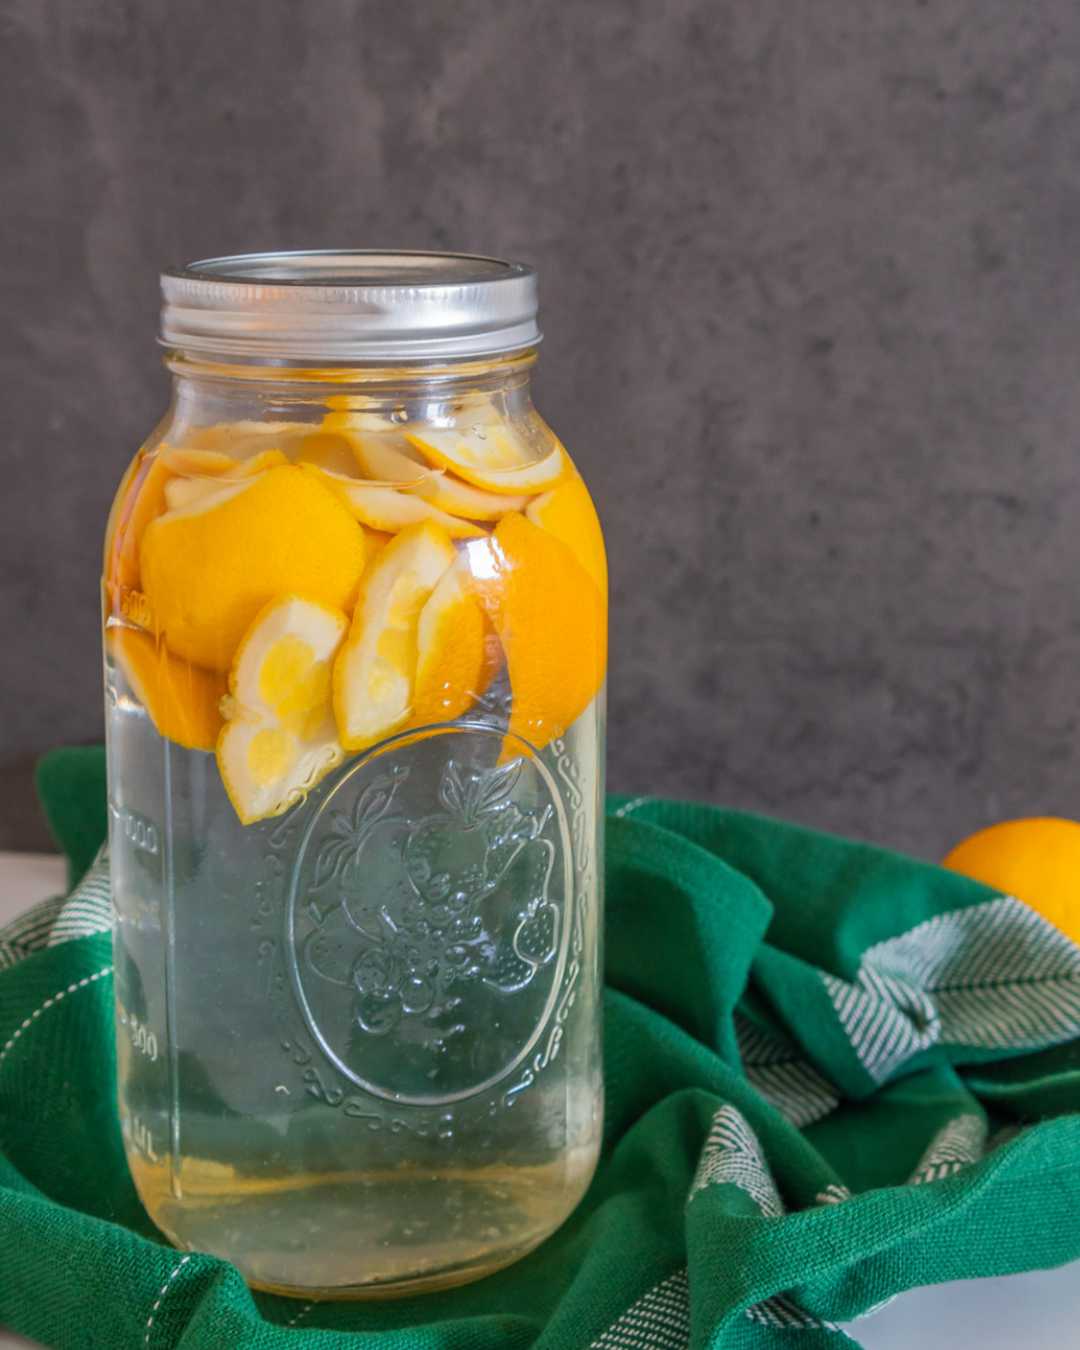 Essig und Orangenschalen in einem Glas, das zu Orangenreiniger wird.